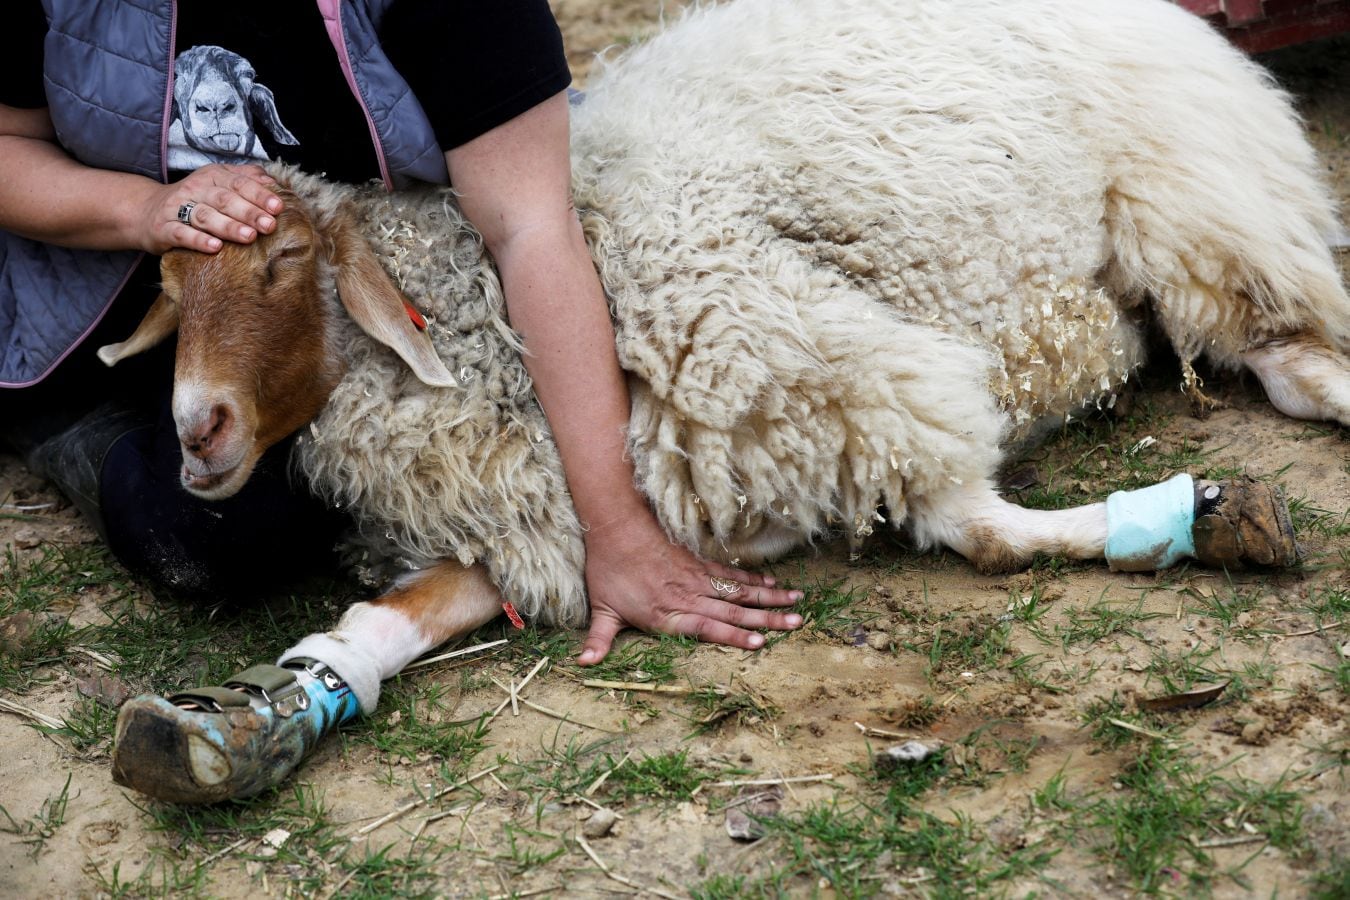 El cerdo 'Omri', la vaca 'Nir', la oveja 'Gary' u 'Omer', una cabra ciega, han encontrado una nueva oportunidad en el refugio Freedom Farm de Israel, que acoge a animales con alguna discapacidad